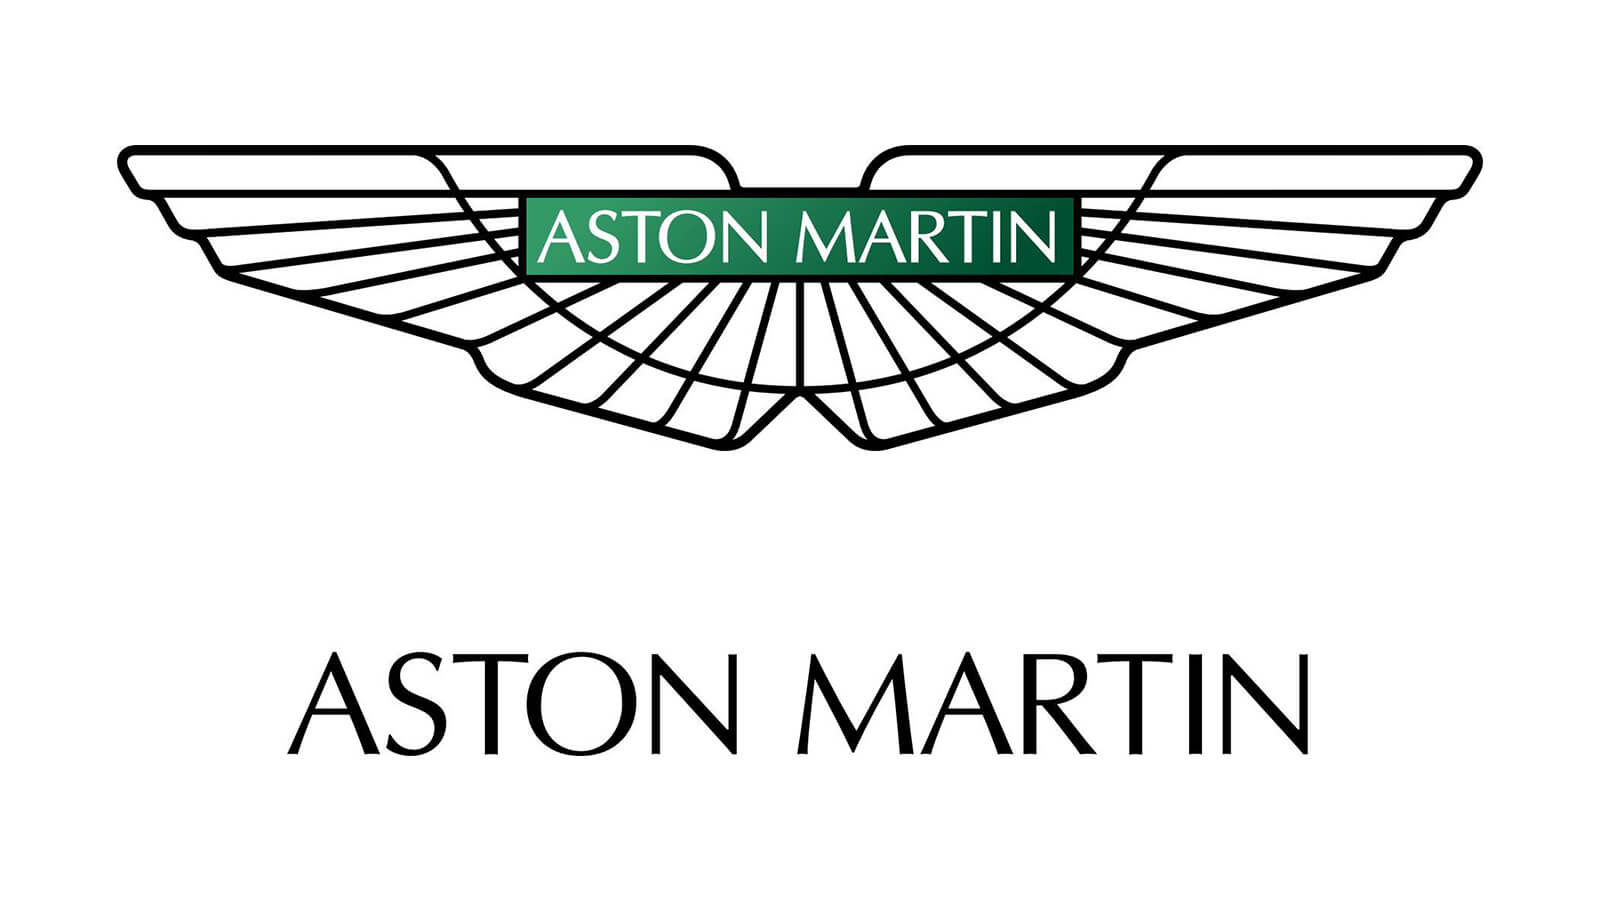 Aston Martin Nasıl Kuruldu? Tarihi ve Kuruluşu?